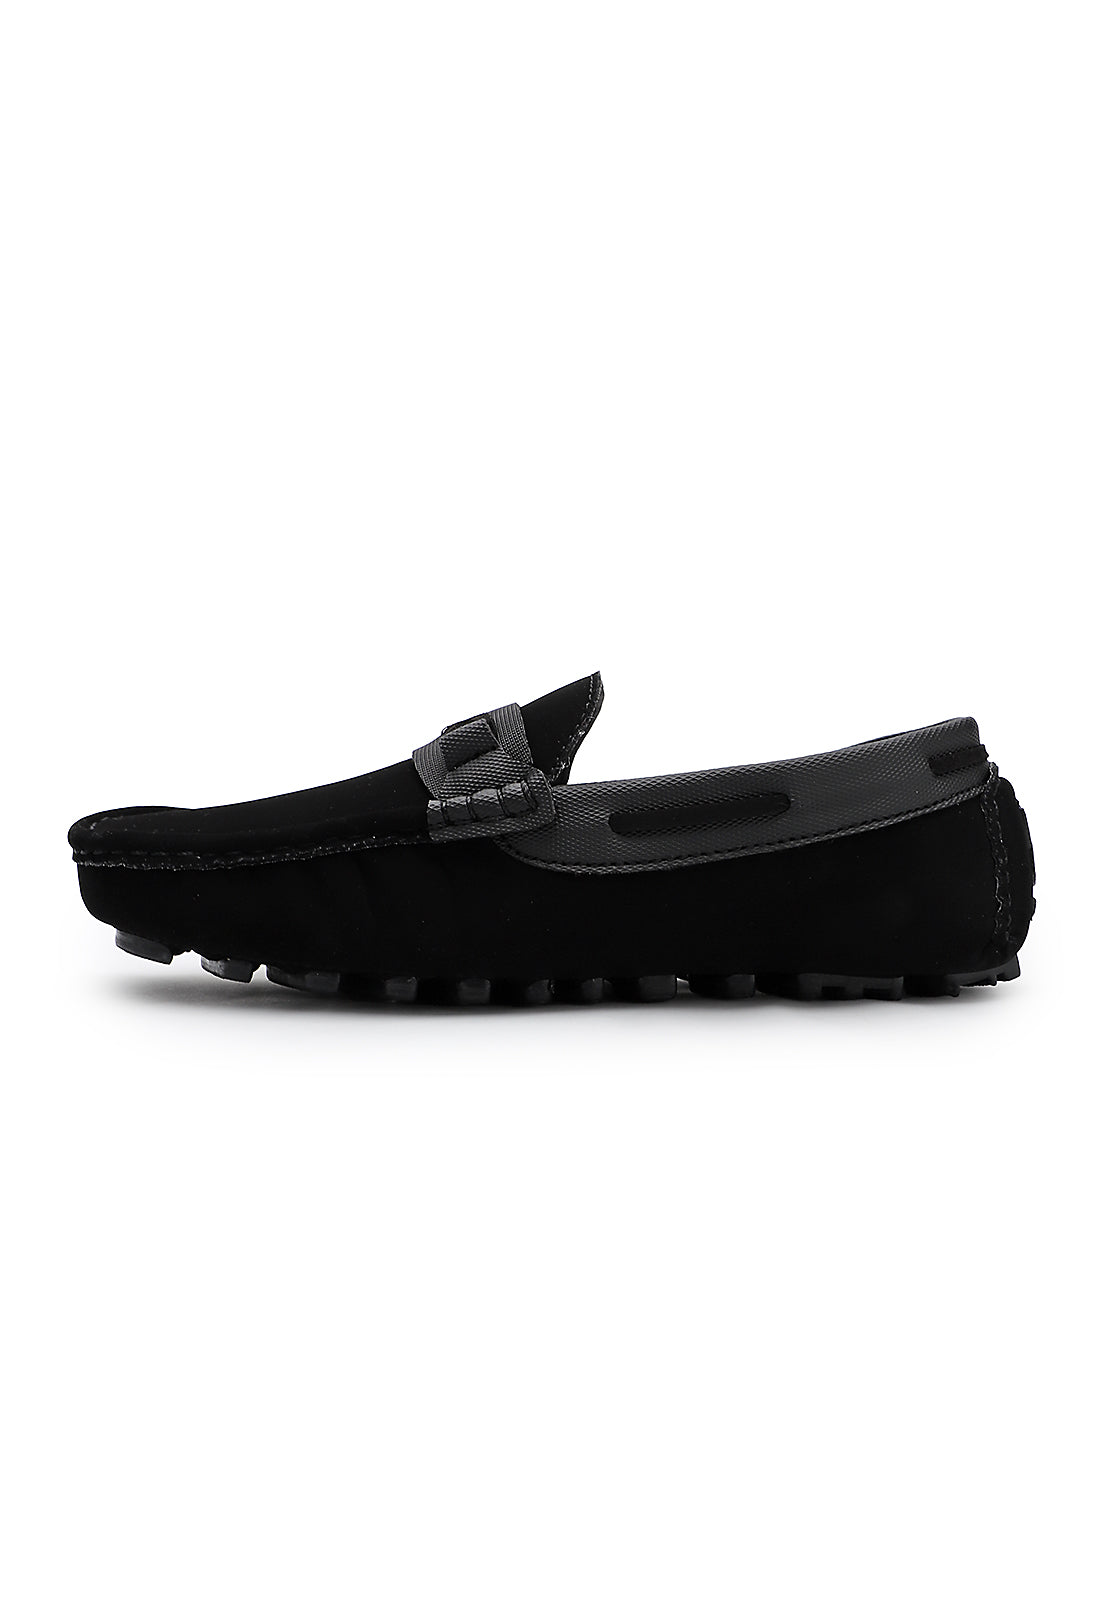 Zapato hombre tubular Negro Tellenzi 041